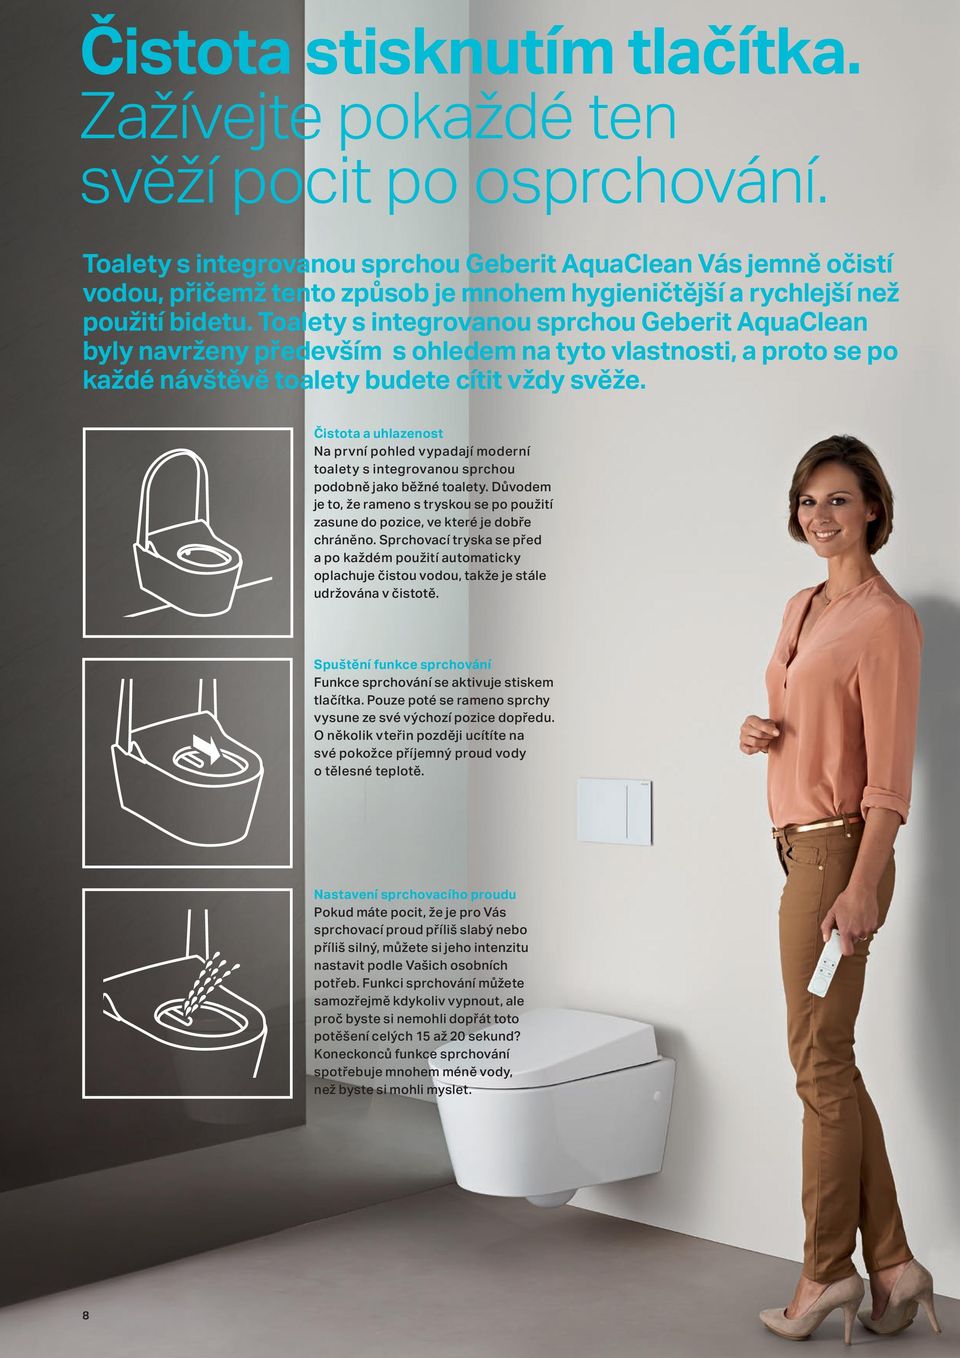 Toalety s integrovanou sprchou Geberit AquaClean byly navrženy především s ohledem na tyto vlastnosti, a proto se po každé návštěvě toalety budete cítit vždy svěže.